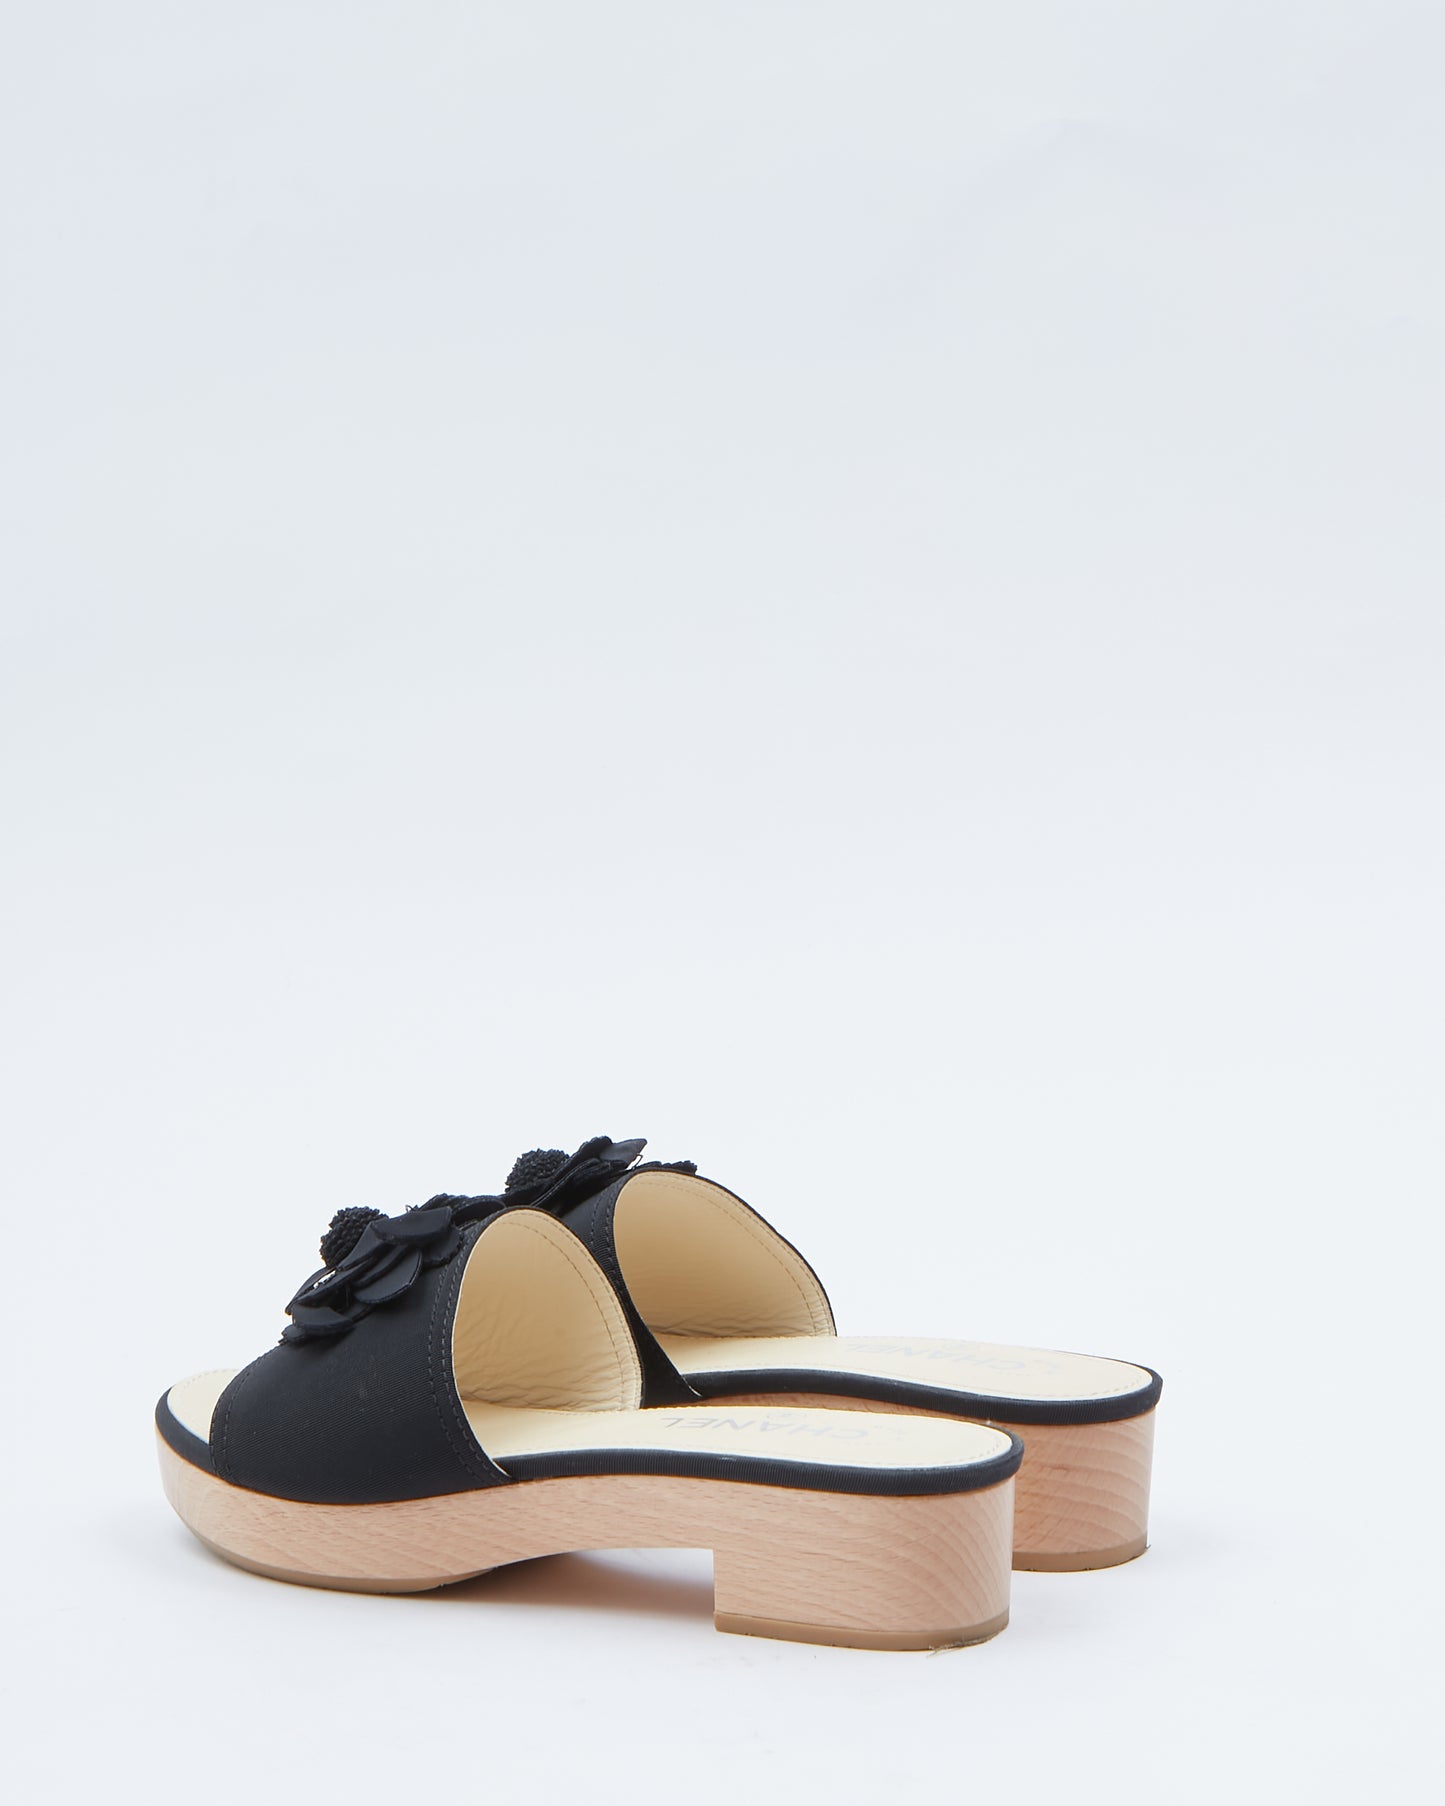 Chanel Black Fabric & Wooden Platform Slides - 37